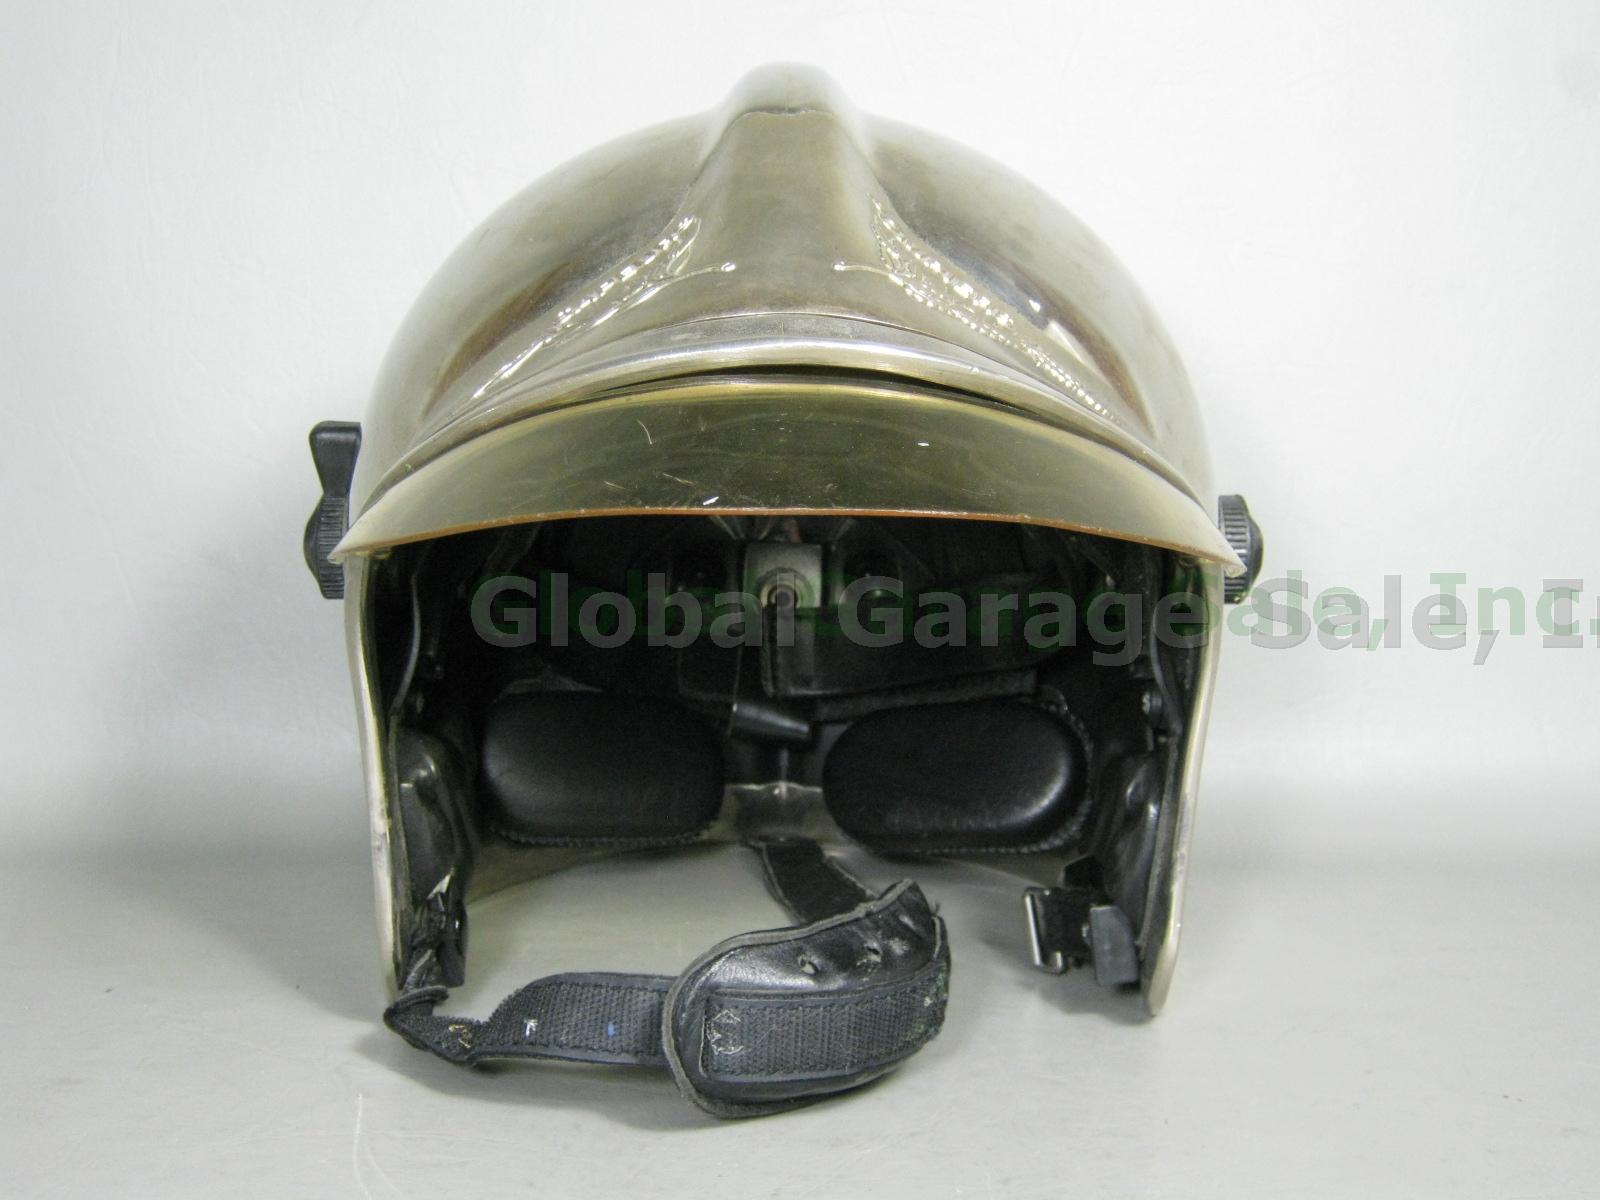 Gallet CGF French Fire Fireman Firefighter Helmet Mirrored Visor Sapeurs Pompier 1